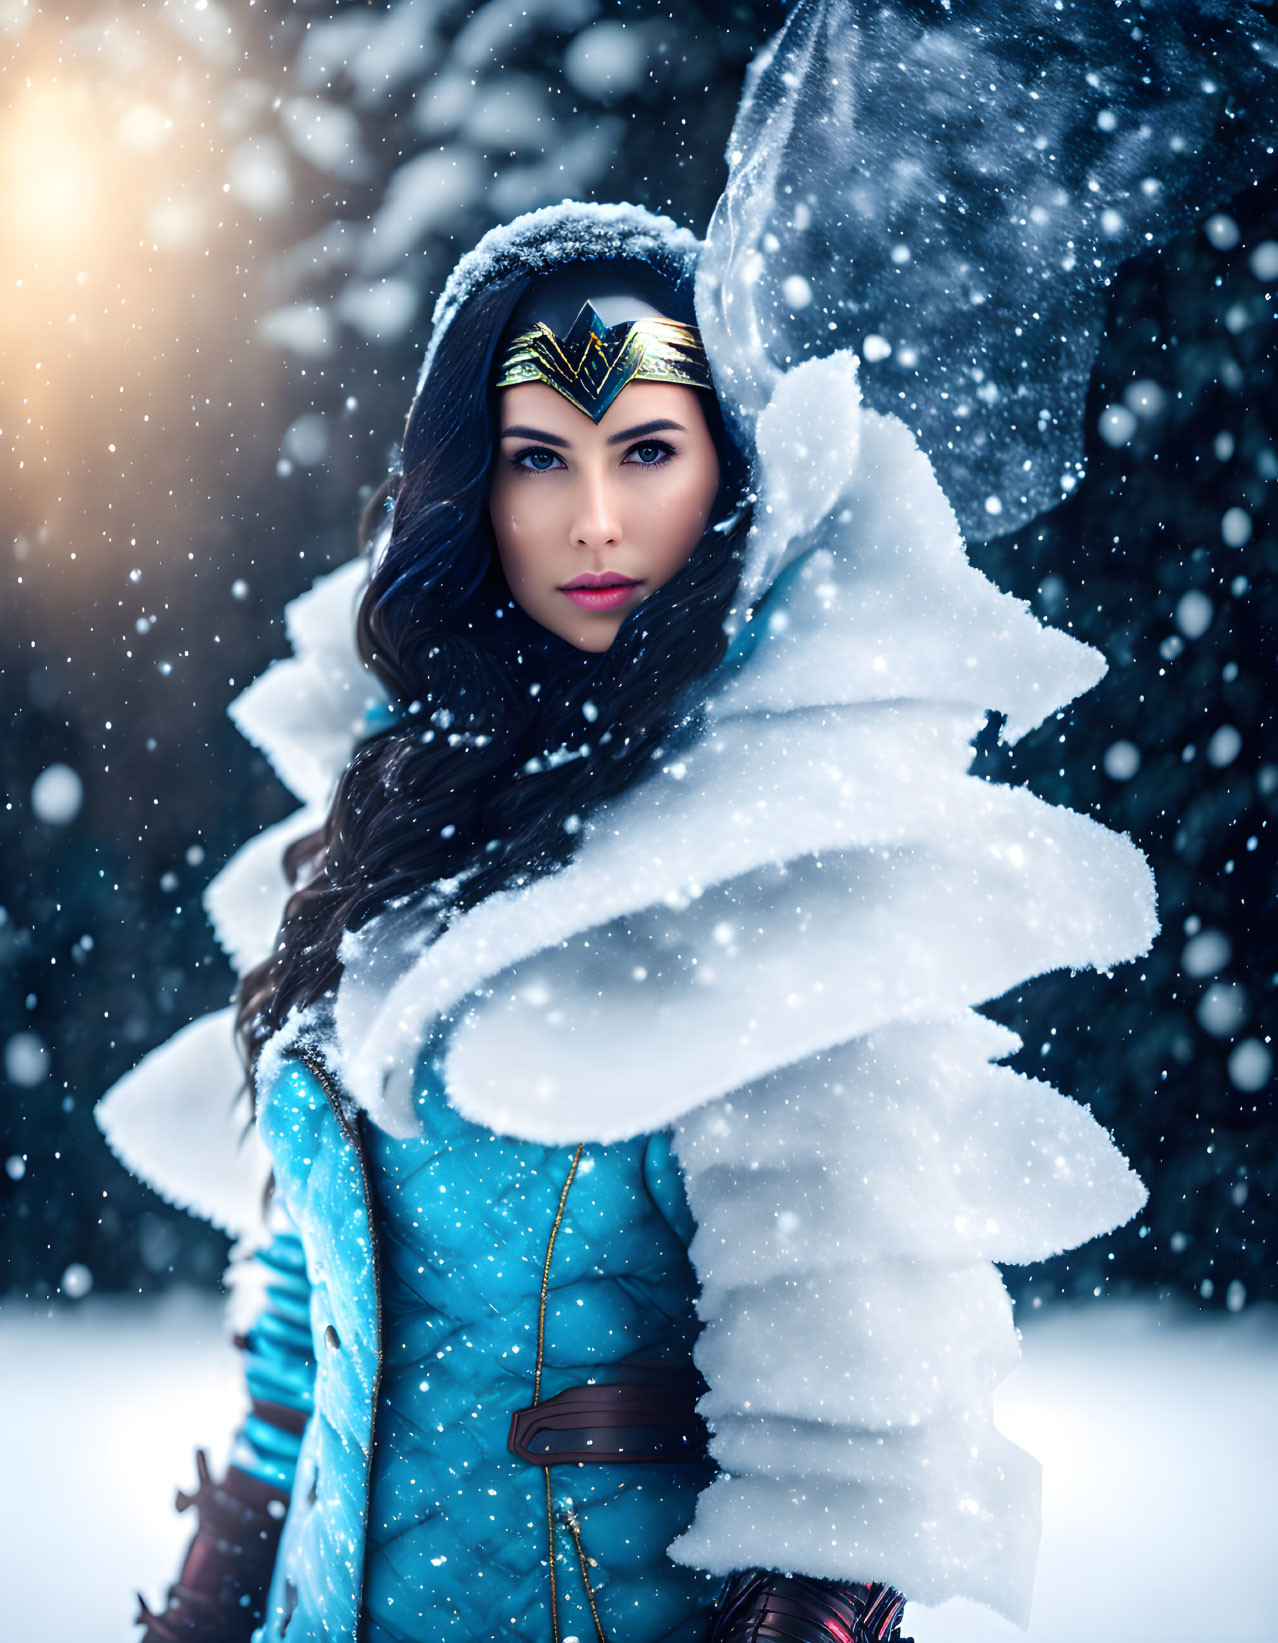 Icy Wonder Woman